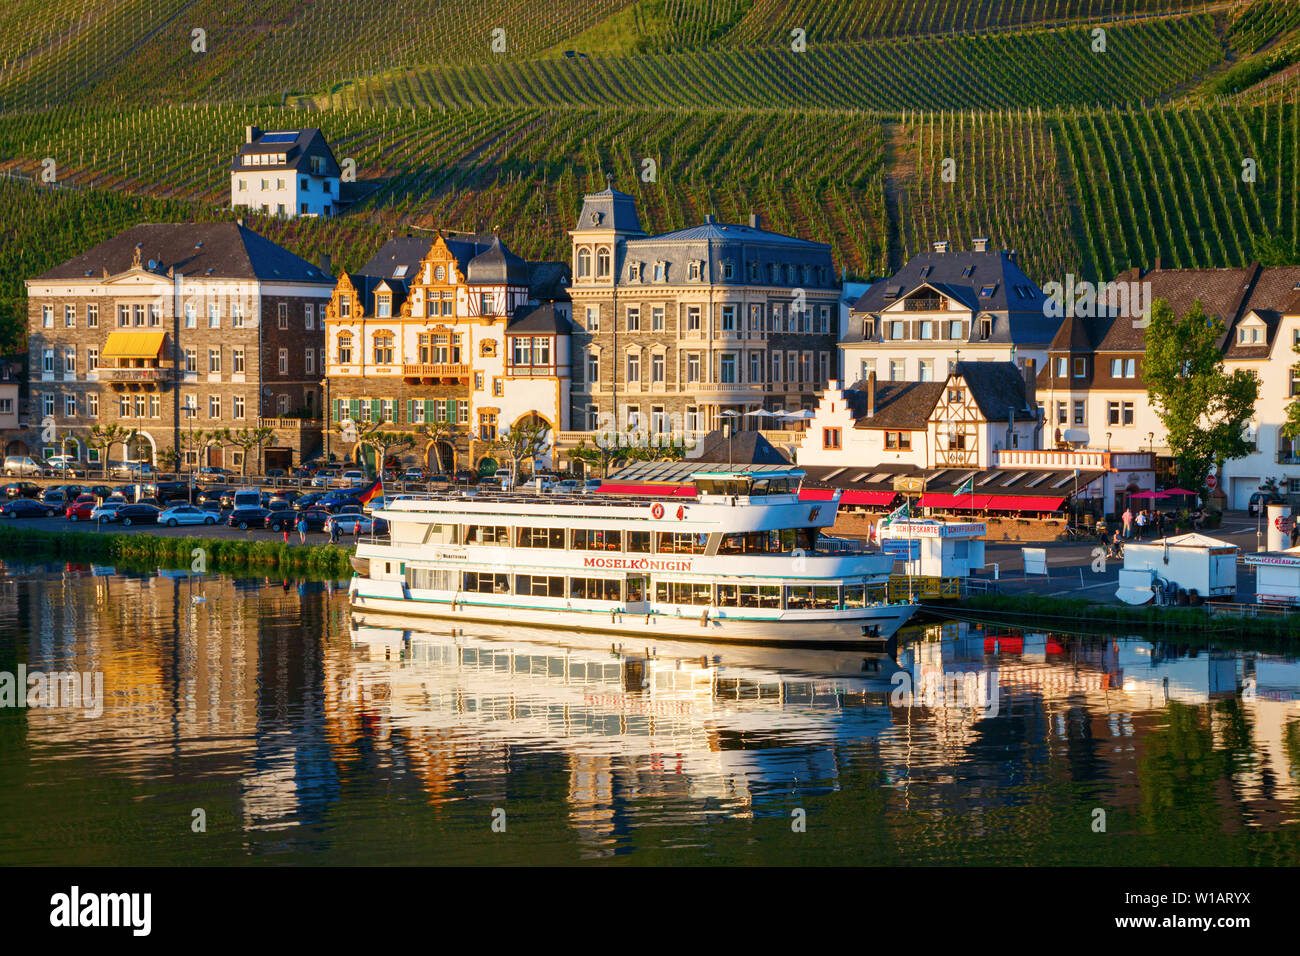 Vue sur la Moselle avec bateau de tourisme, la rue Gestade et vignobles au coucher du soleil. Bernkastel-Kues, Rhénanie-Palatinat, Allemagne. Banque D'Images